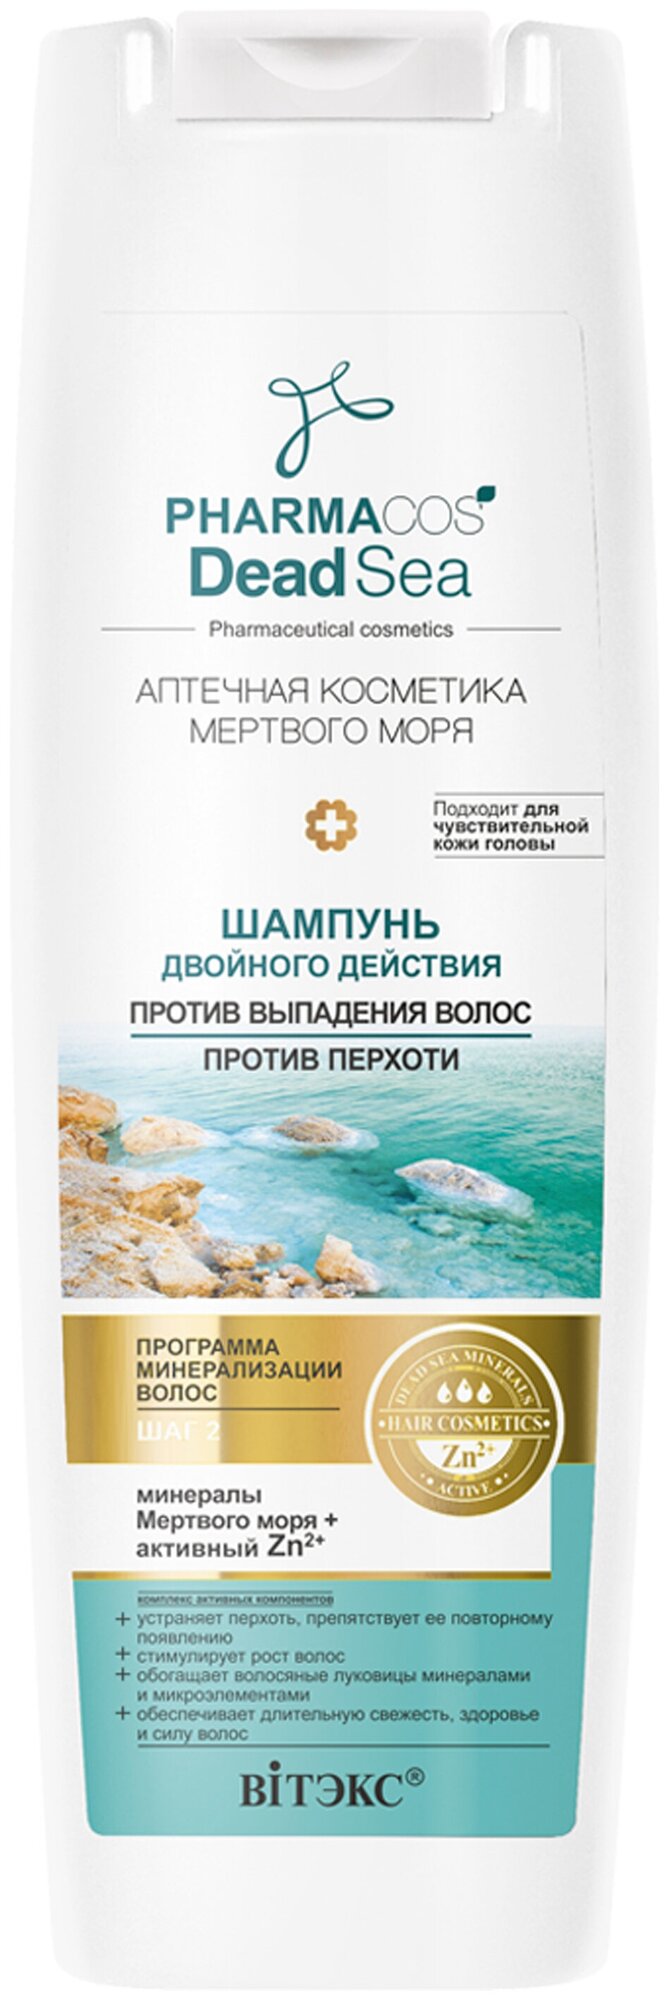 Витэкс шампунь Pharmacos Dead Sea Аптечная косметика Мертвого моря Двойного действия Против выпадения волос и перхоти 400 мл